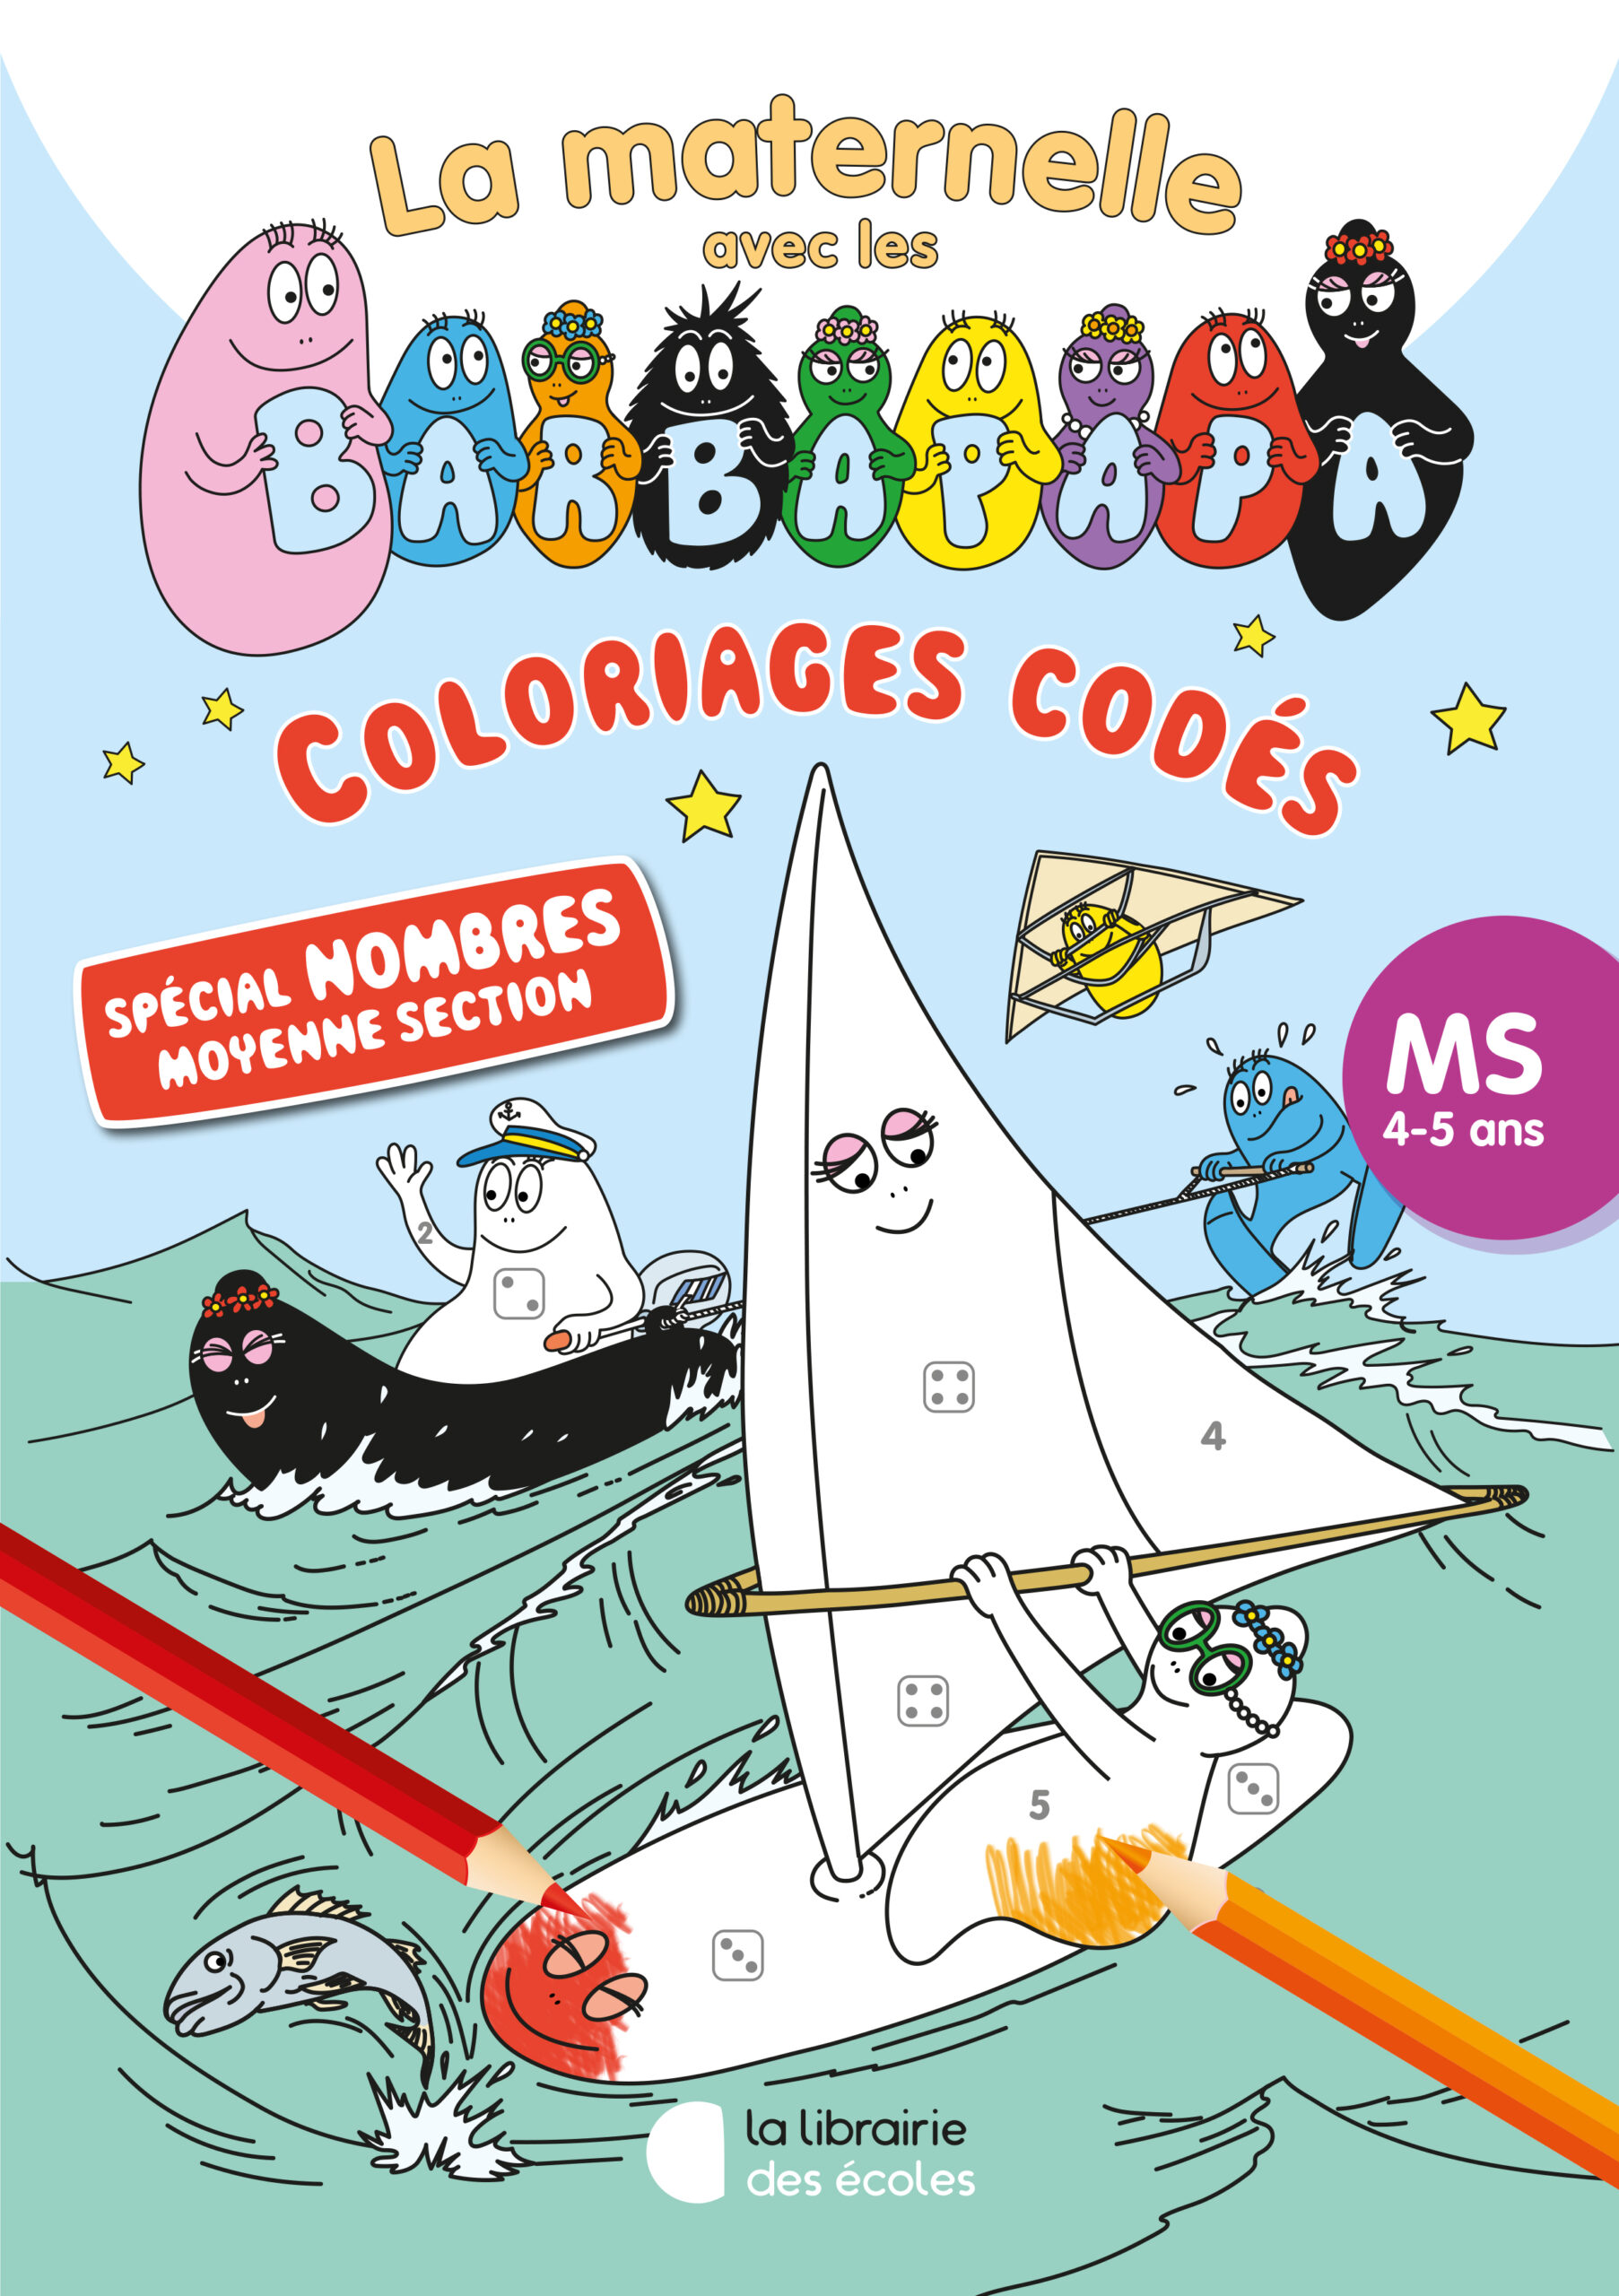 Maternelle: coloriage magique  Coloriage magique, Coloriage